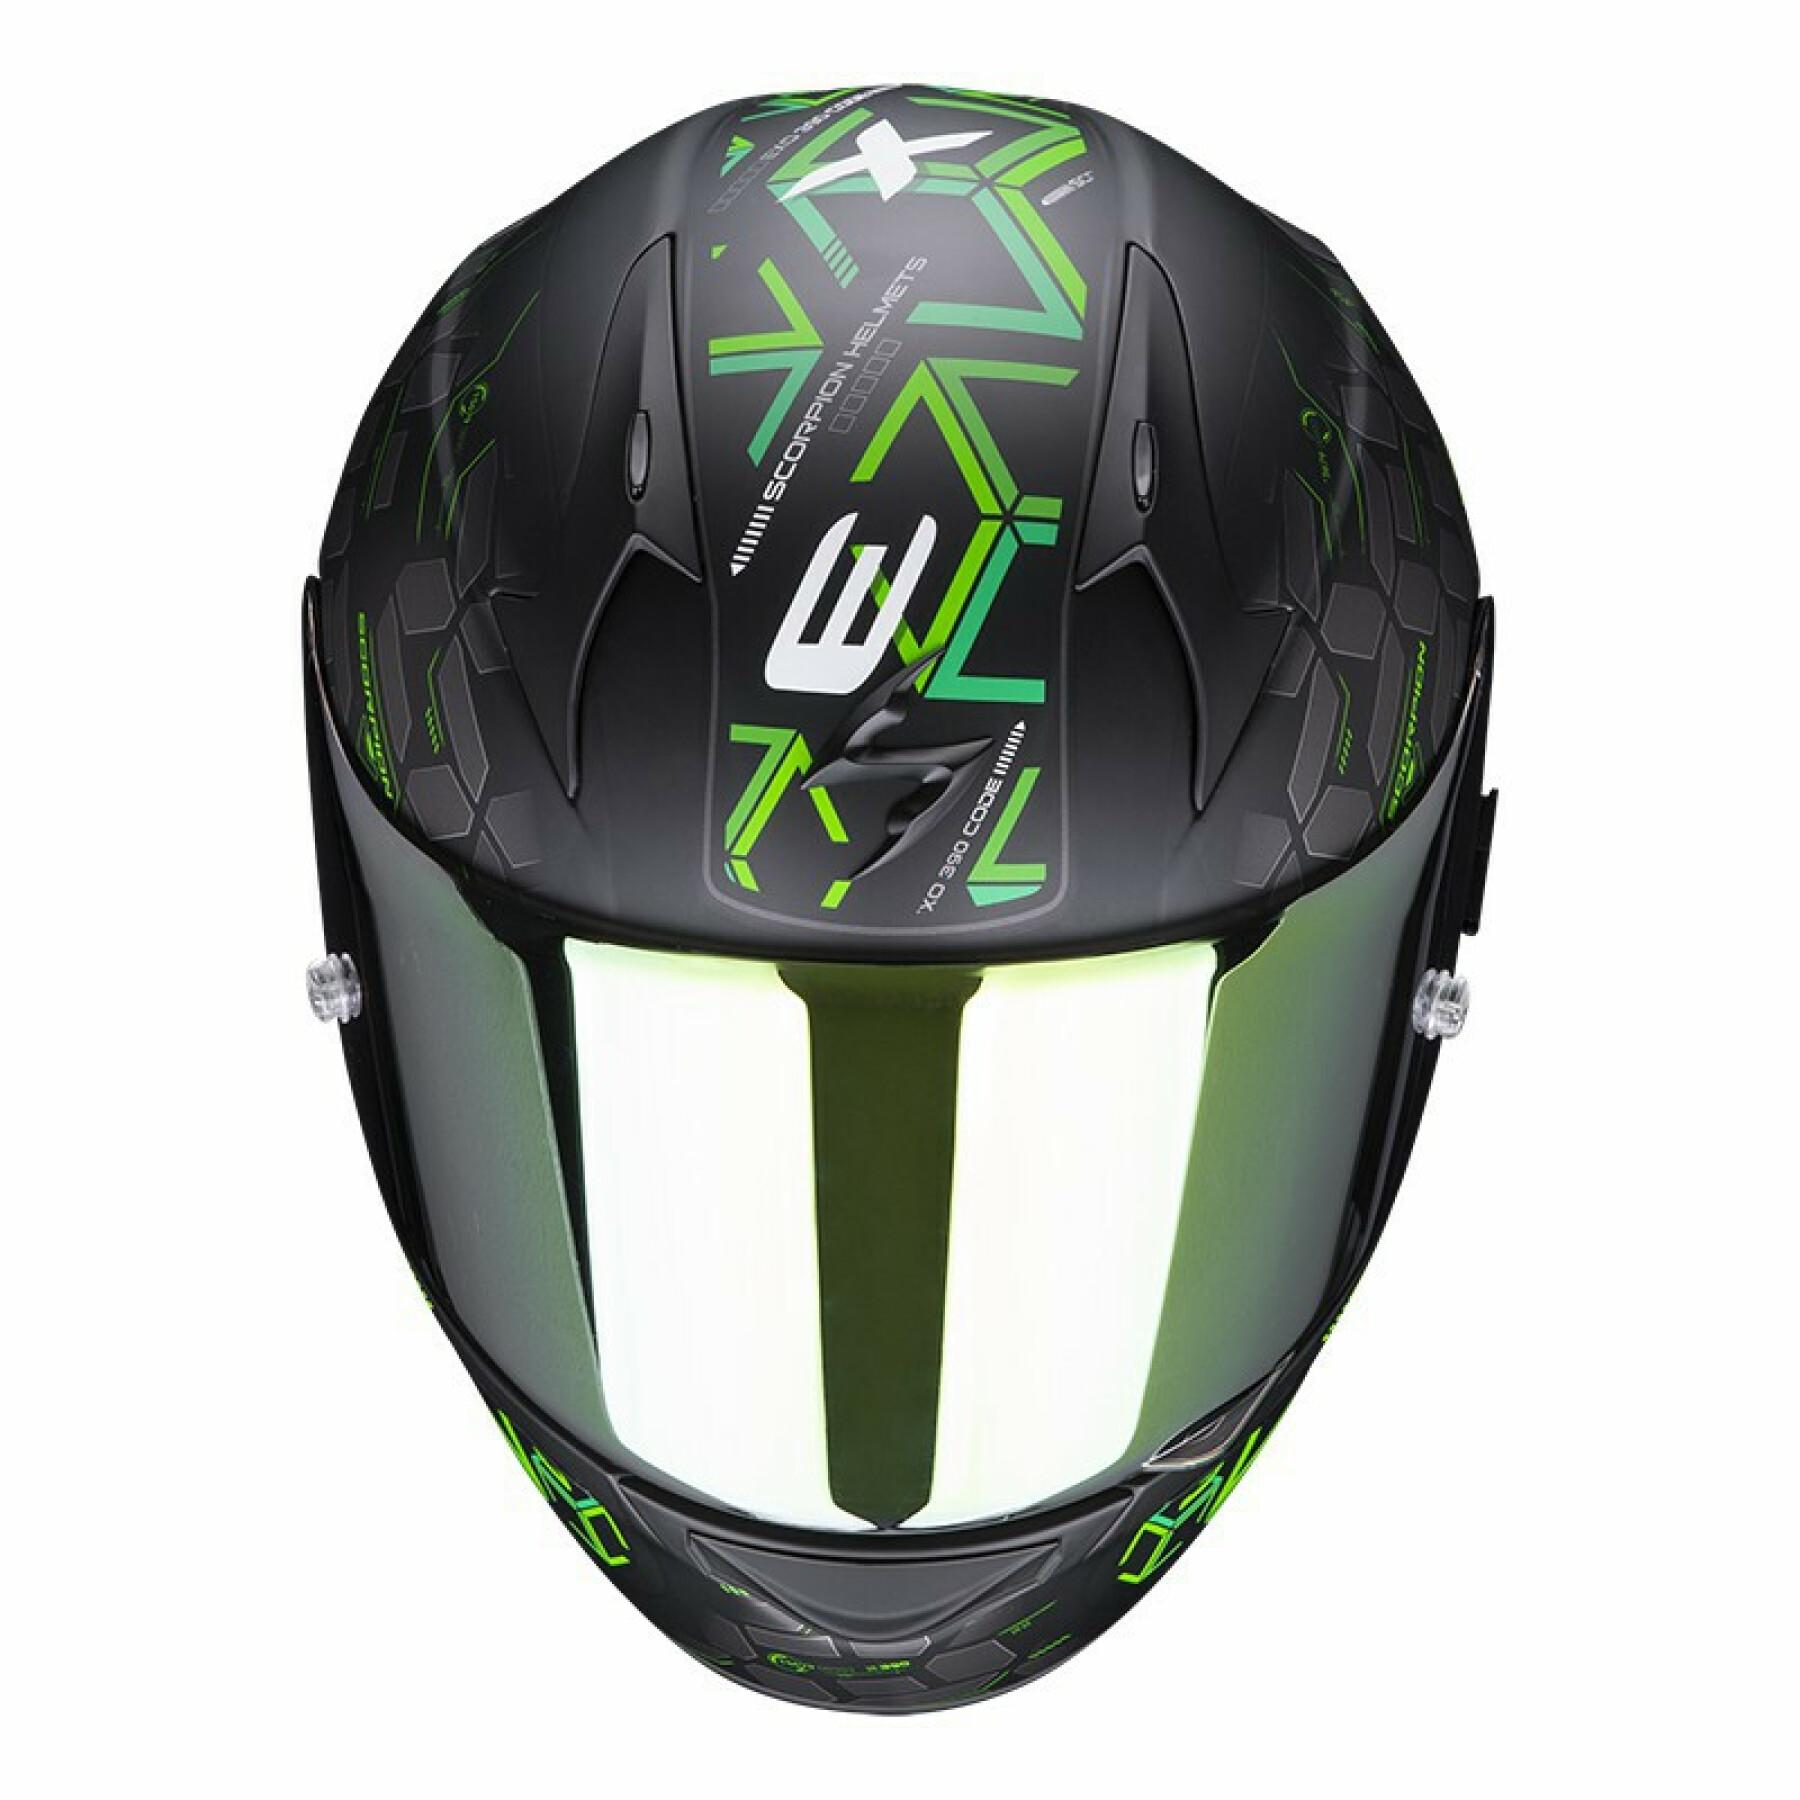 Full face helmet Scorpion Exo-390 CUBE